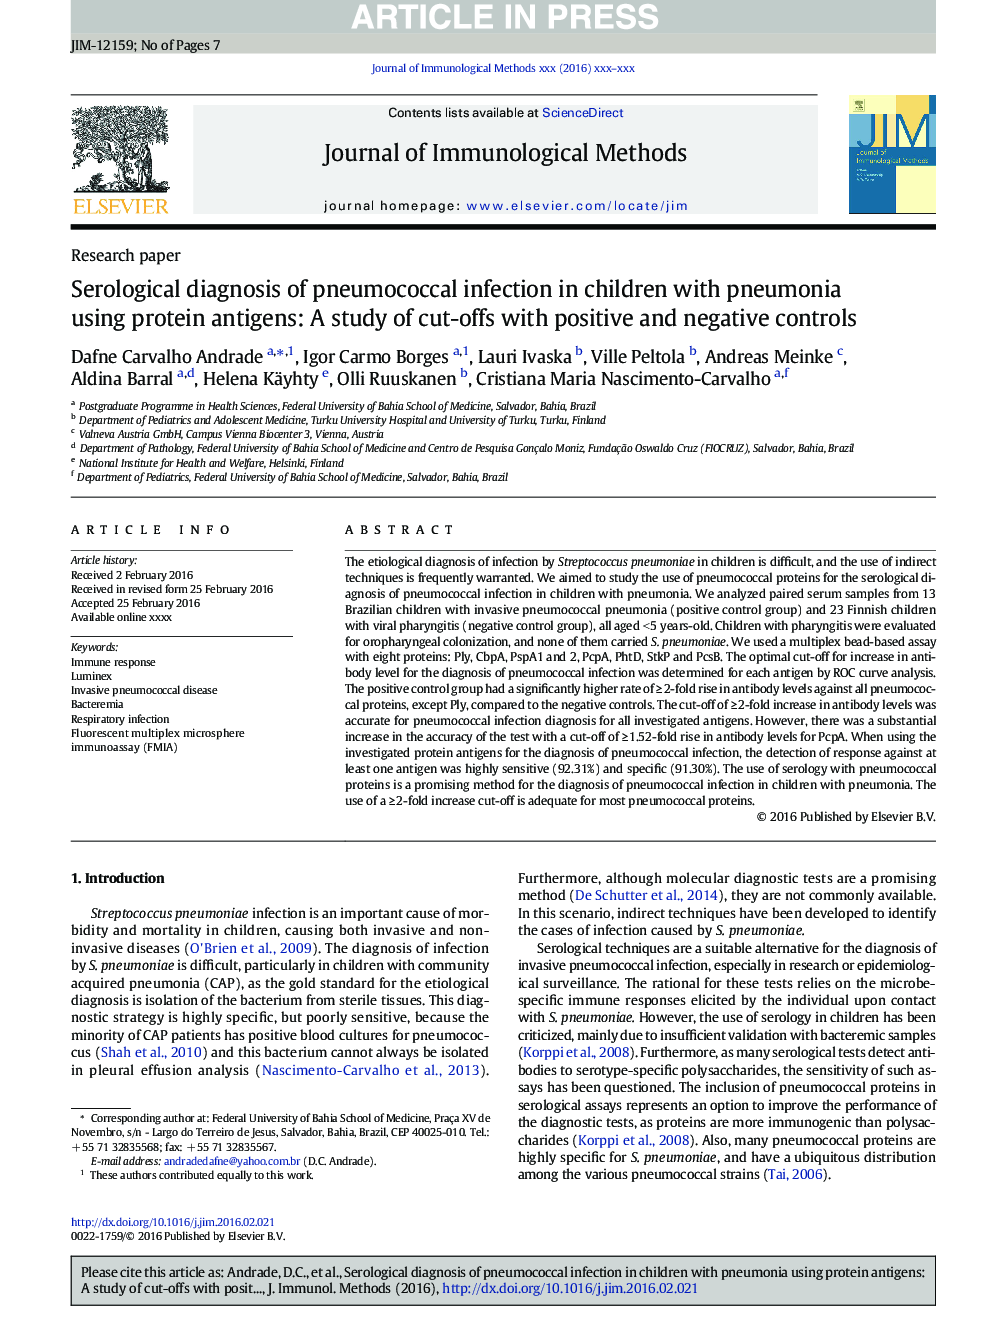 تشخیص سرولوژیک عفونت پنوموکوک در کودکان مبتلا به پنومونی با استفاده از آنتی ژن های پروتئینی: مطالعه برش ها با کنترل های مثبت و منفی 